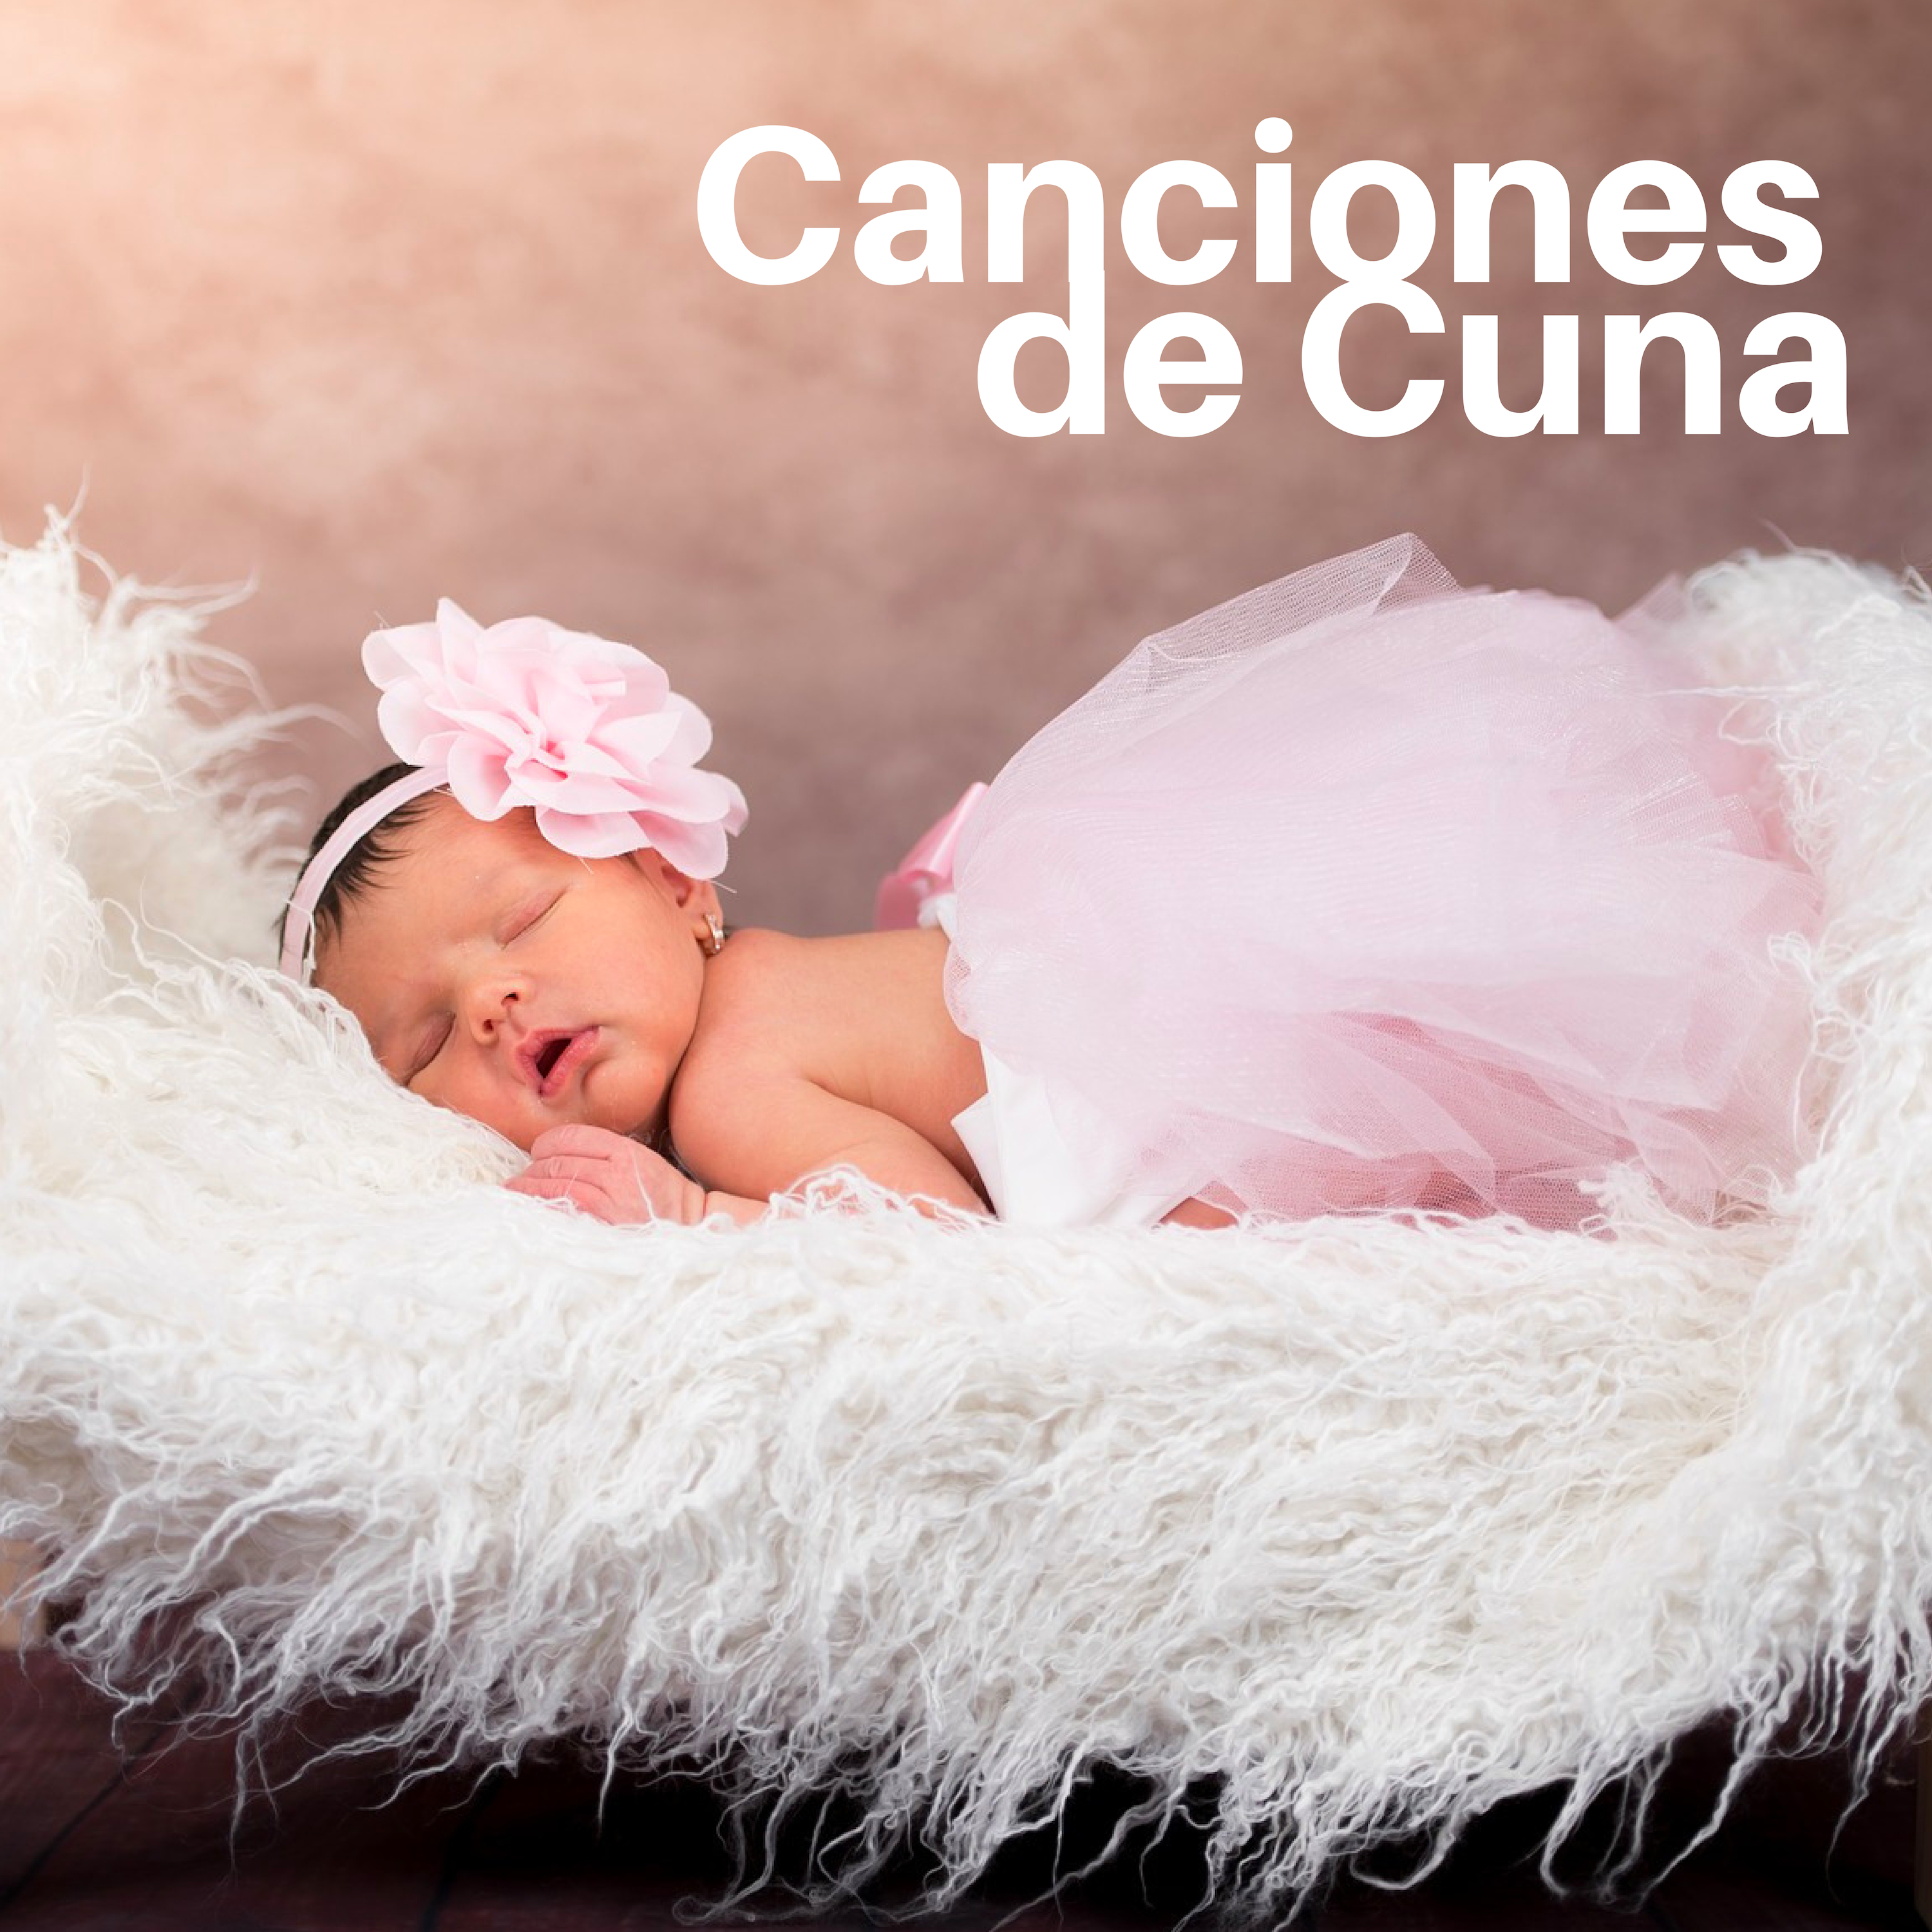 Canciones de Cuna - La Mejor Colleción de Música Relajante para Bebés, Niños Pequeños y Recién Nacidos